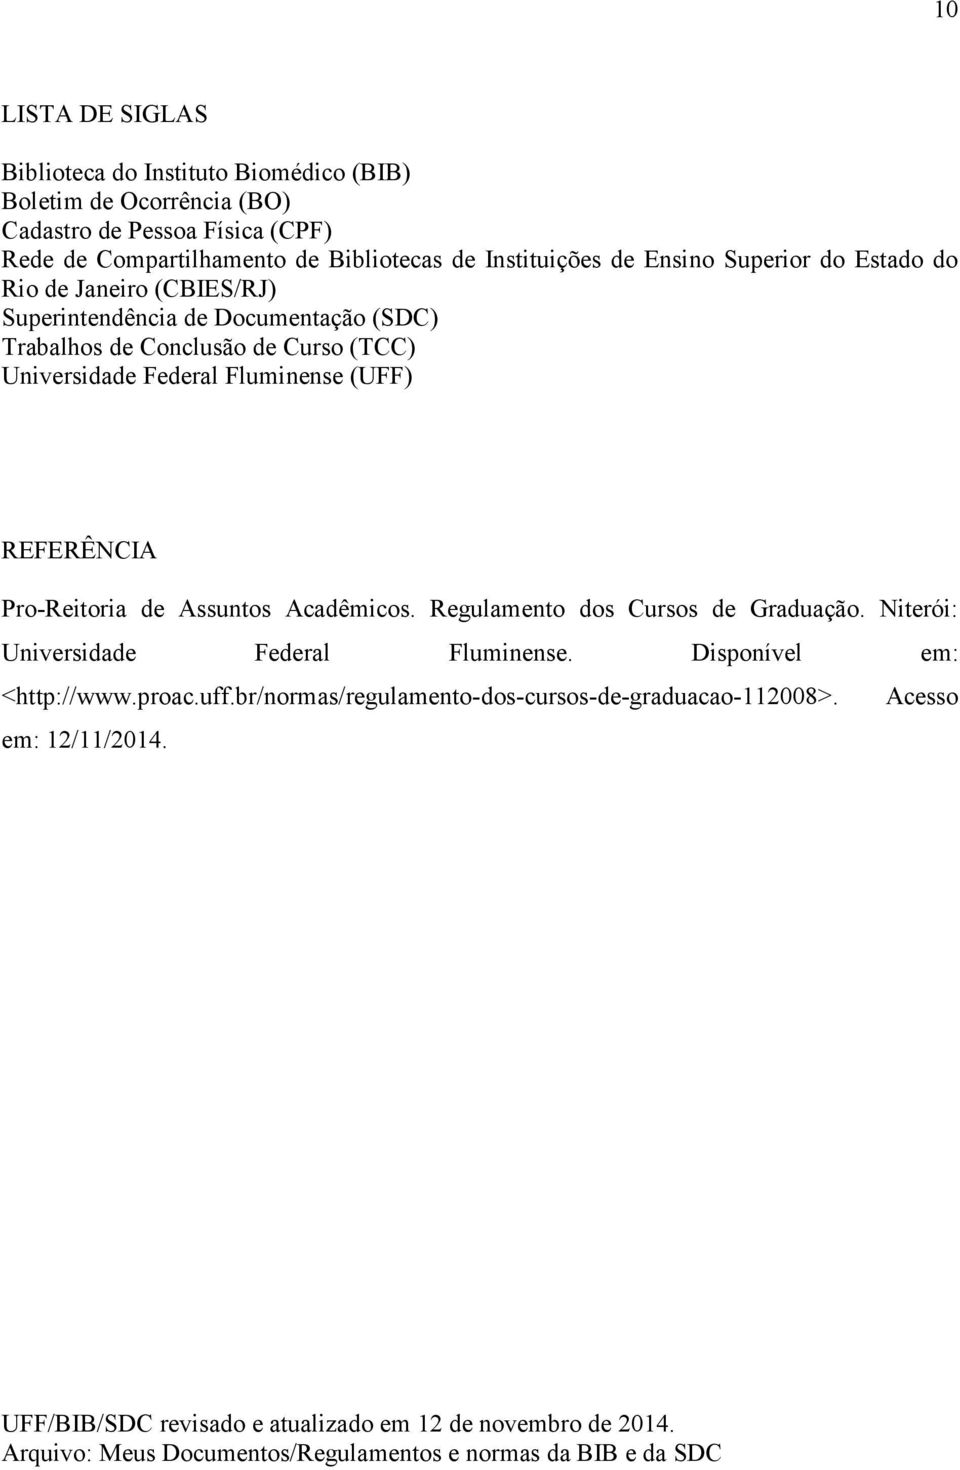 REFERÊNCIA Pro-Reitoria de Assuntos Acadêmicos. Regulamento dos Cursos de Graduação. Niterói: Universidade Federal Fluminense. Disponível em: <http://www.proac.uff.